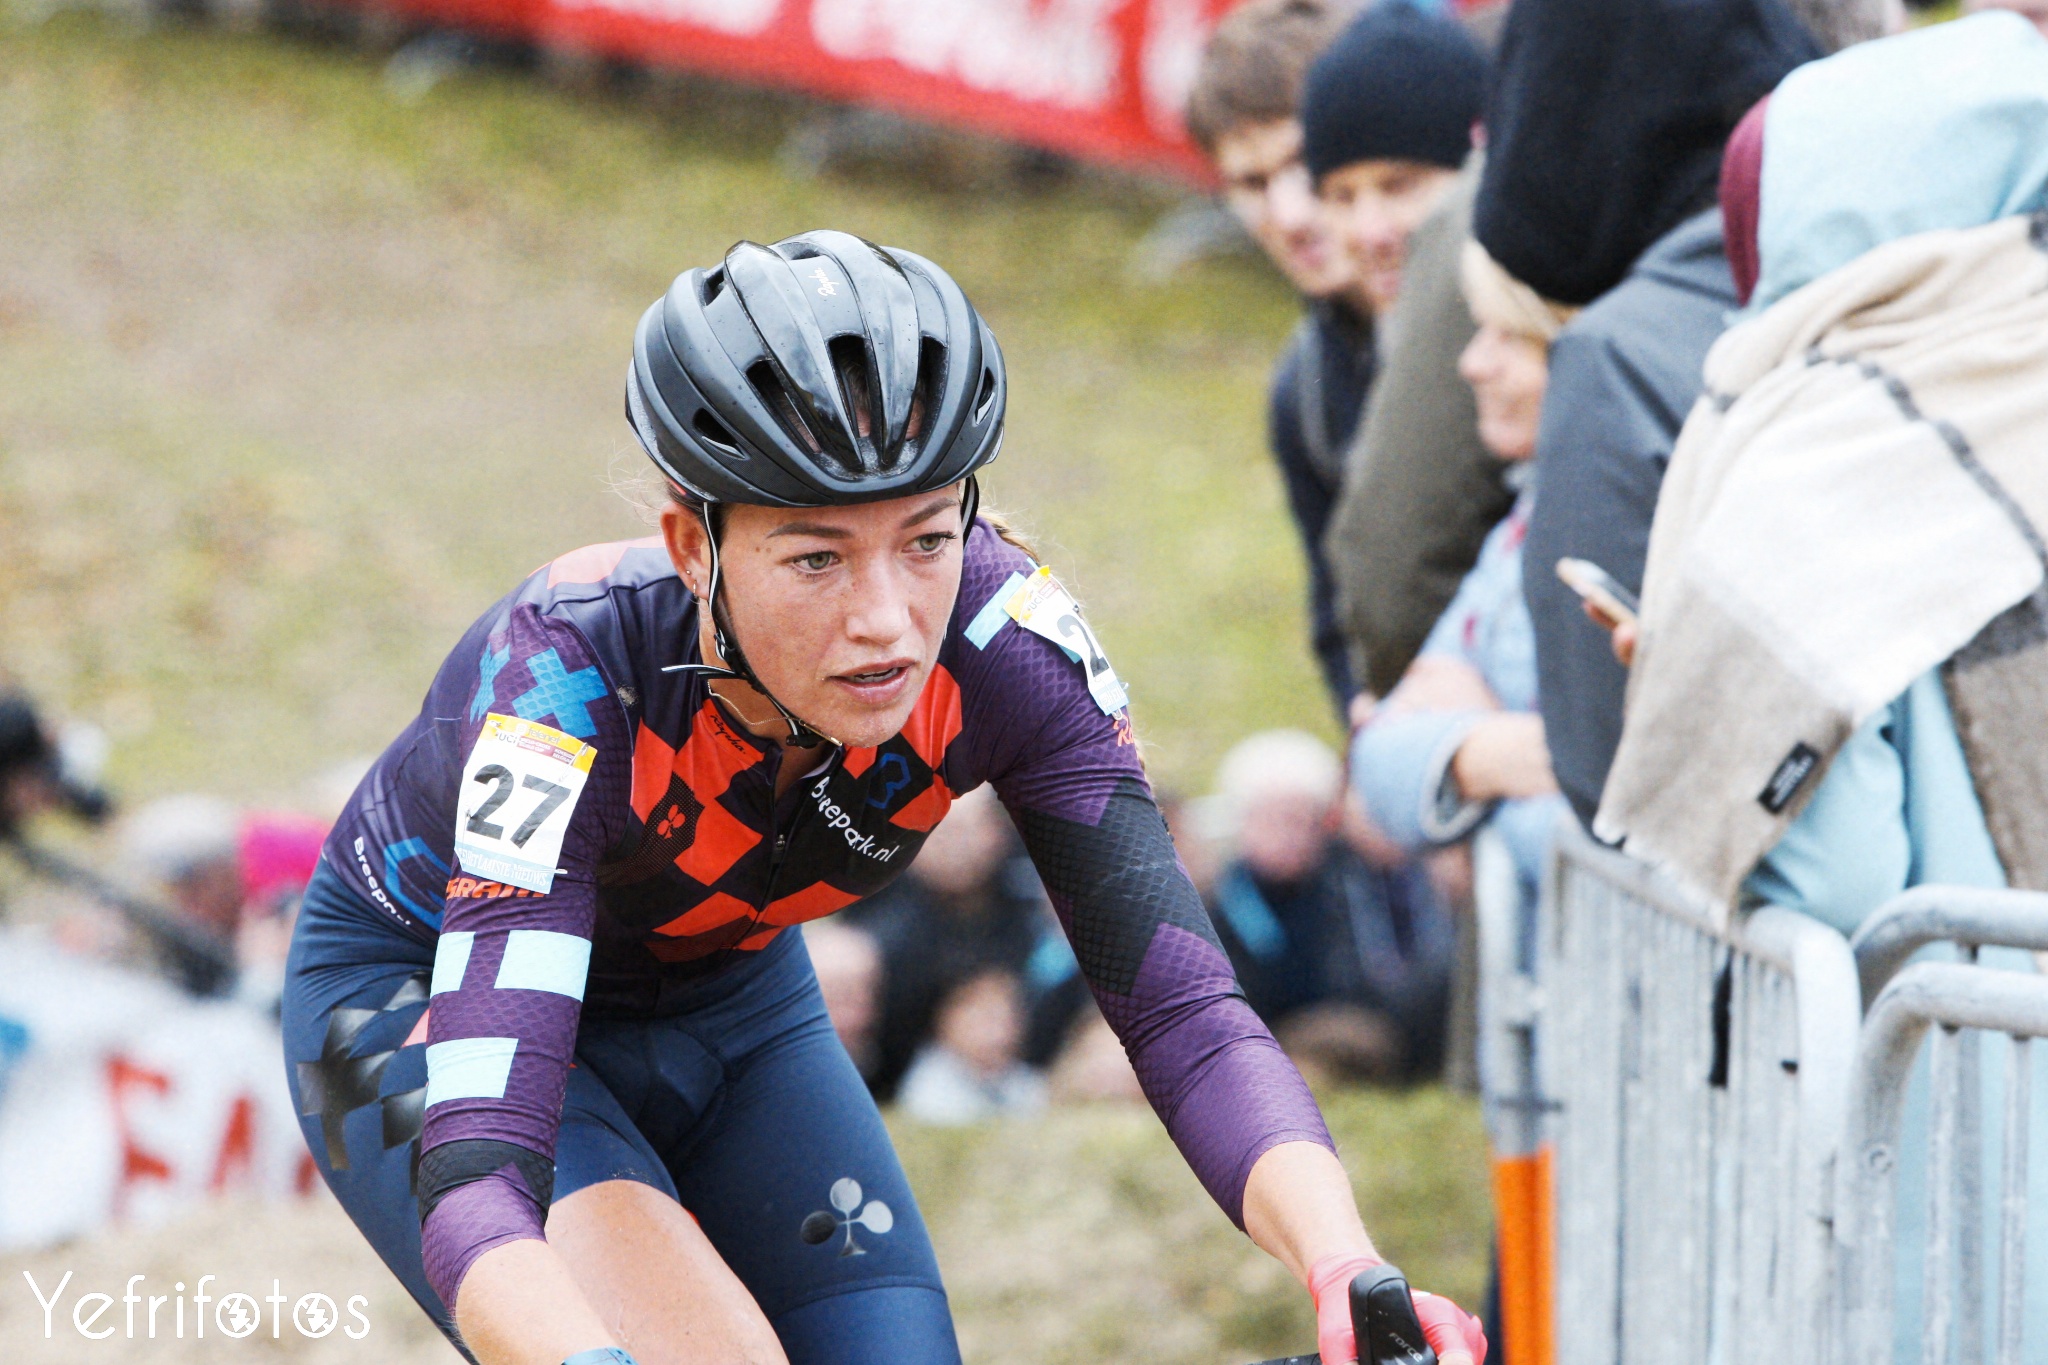 Koksijde - UCI Cyclocross World Cup - Sophie de Boer